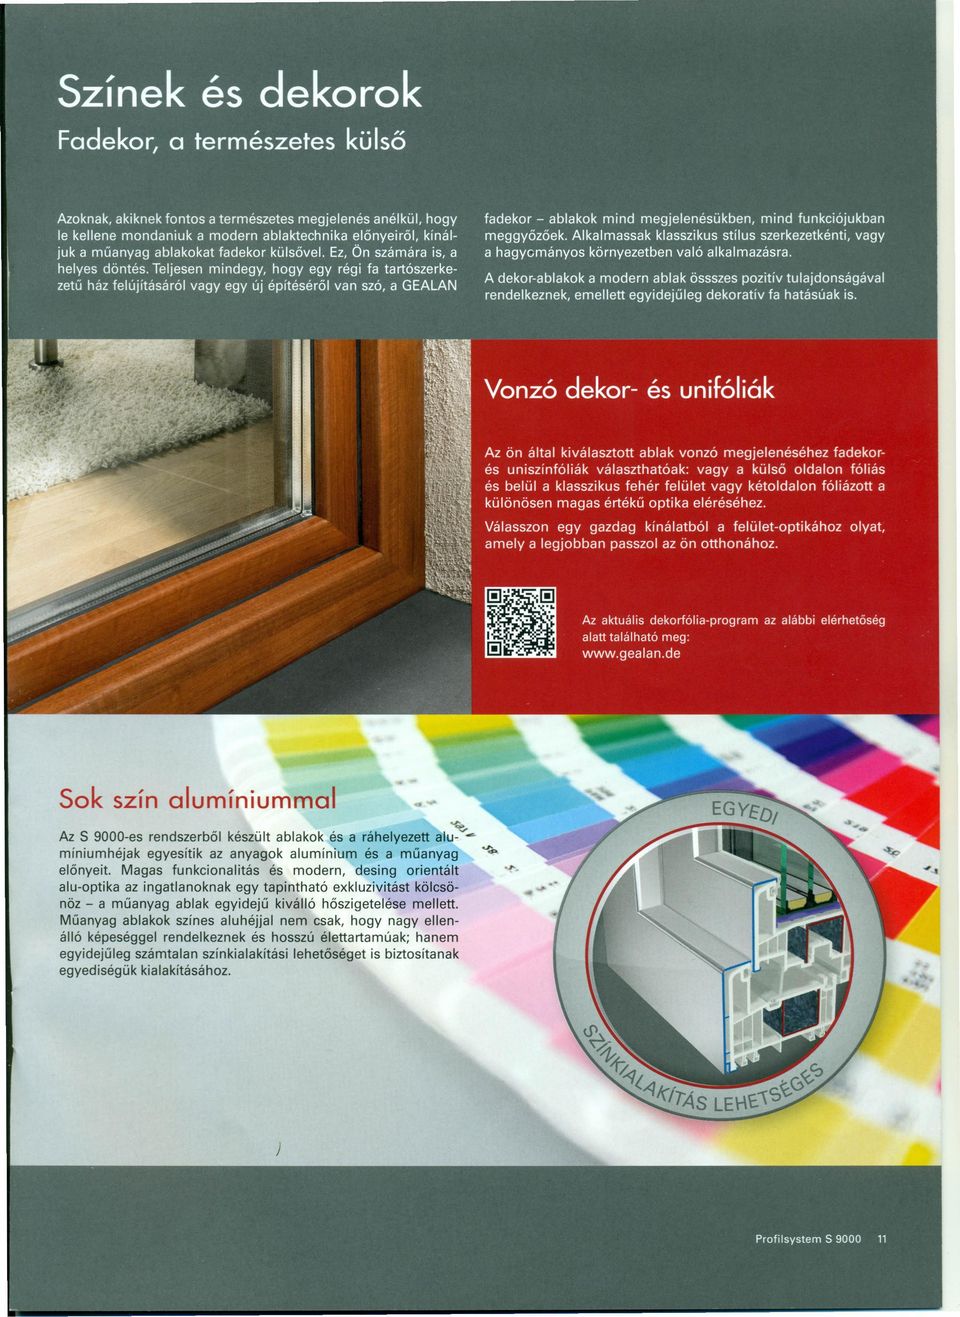 Magas funkcionalitás és modern, desing orientált alu-optika az ingatlanoknak egy tapintható exkluzivitást kölcsönöz - a műanyag ablak